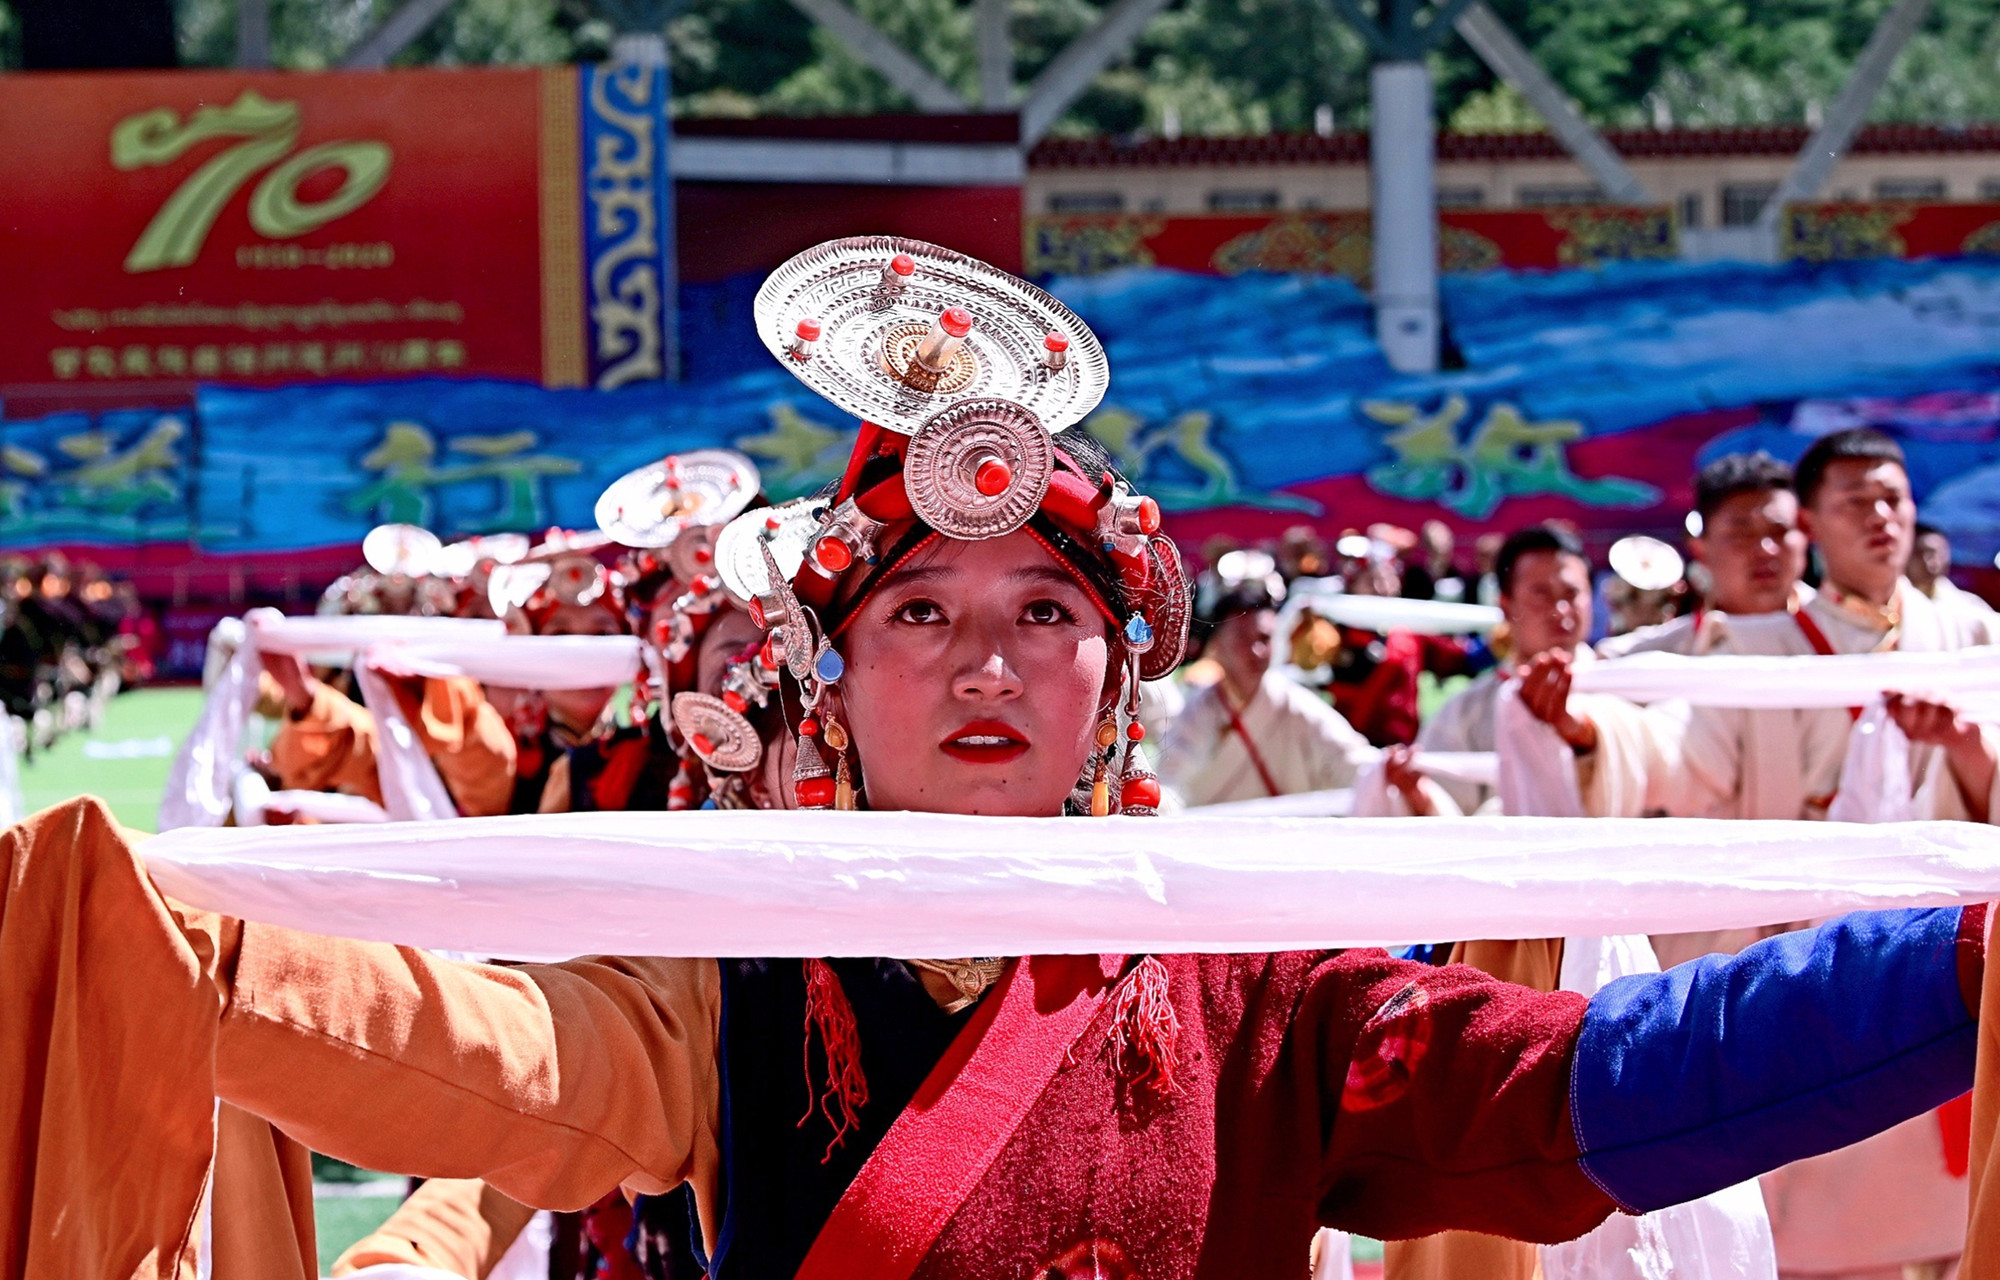 9月17日上午，四川省甘孜藏族自治州成立70周年慶祝大會在康定舉行，各界群眾載歌載舞歡慶這一盛大的節日。(香港文匯網記者 李兵 攝)

